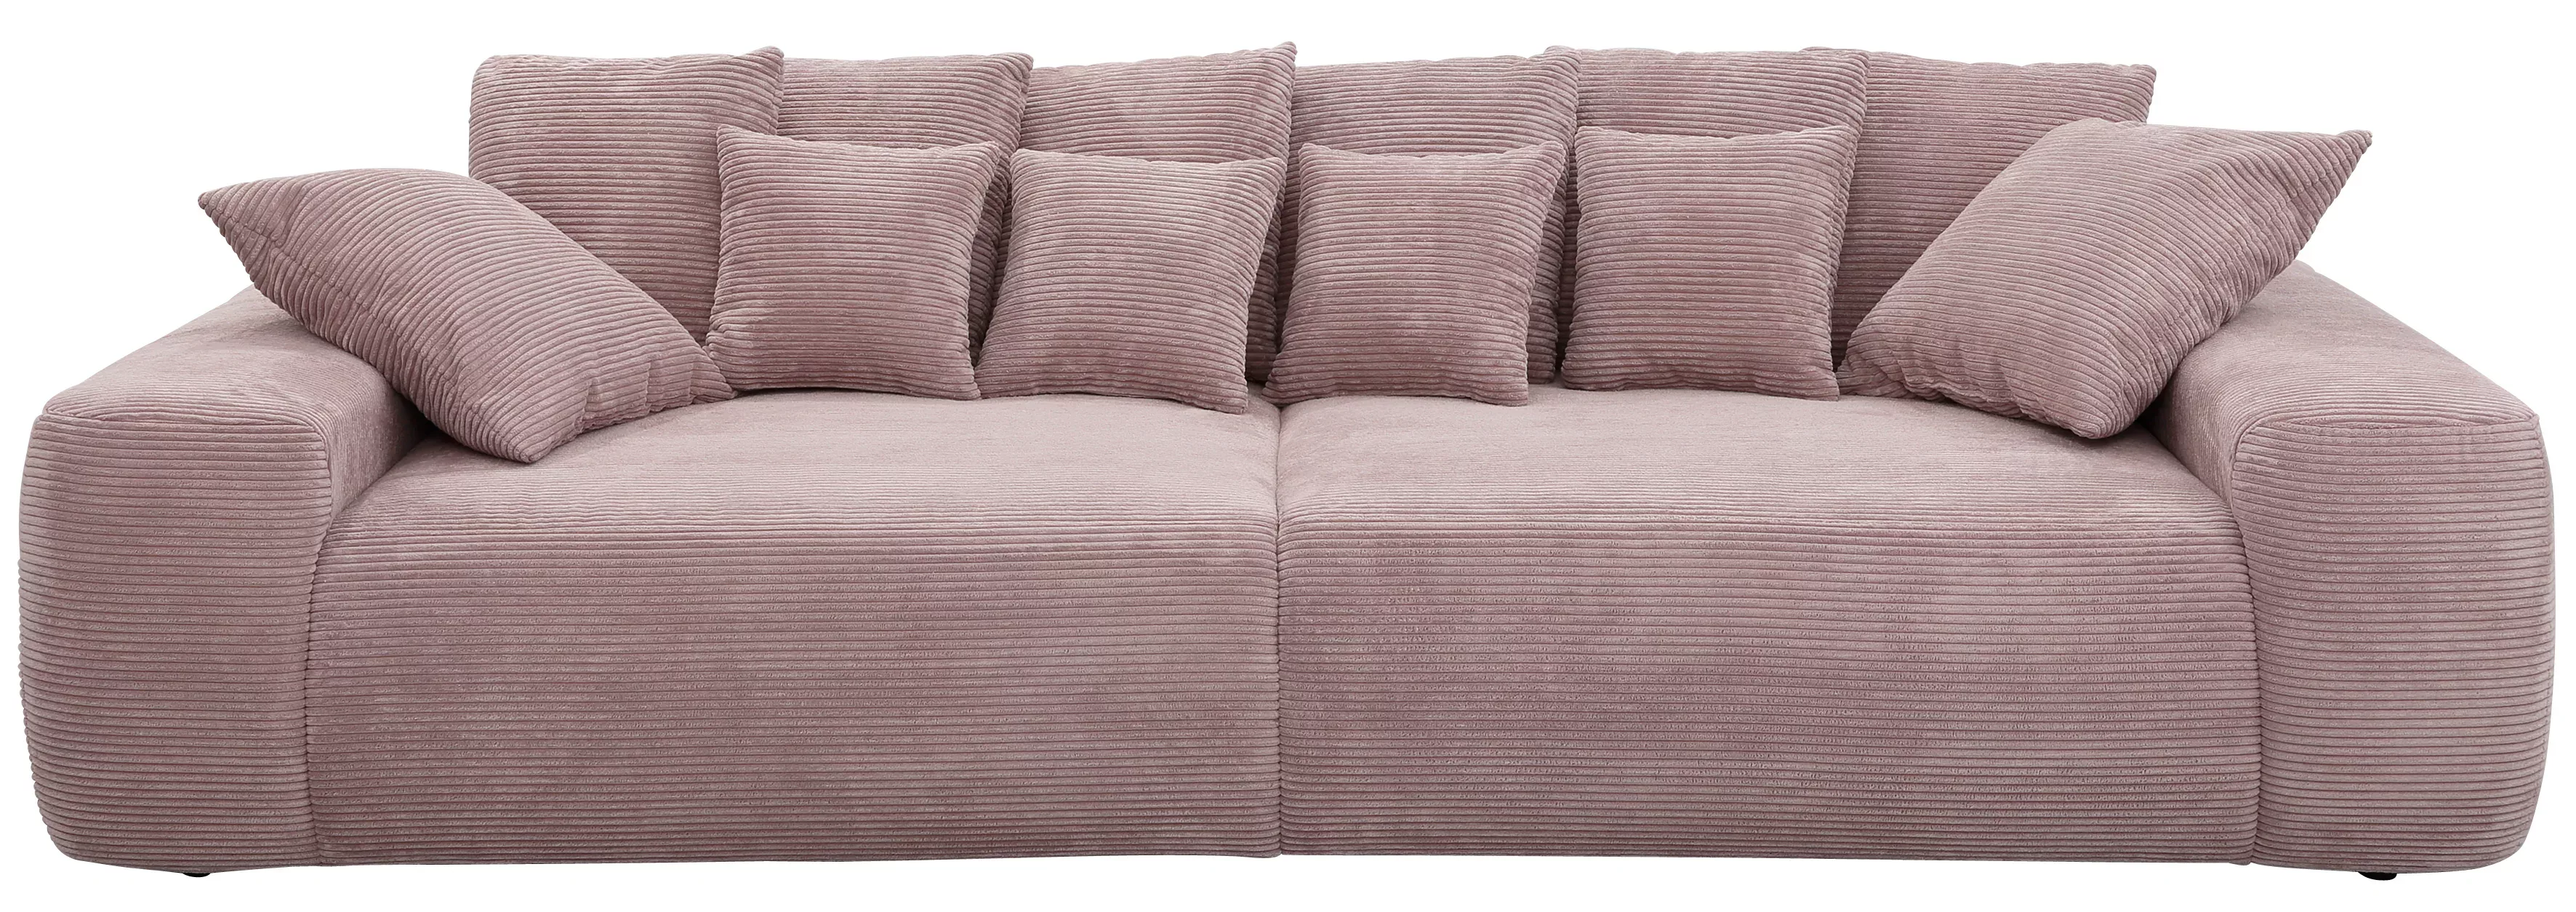 Home affaire Big-Sofa "Glamour" günstig online kaufen